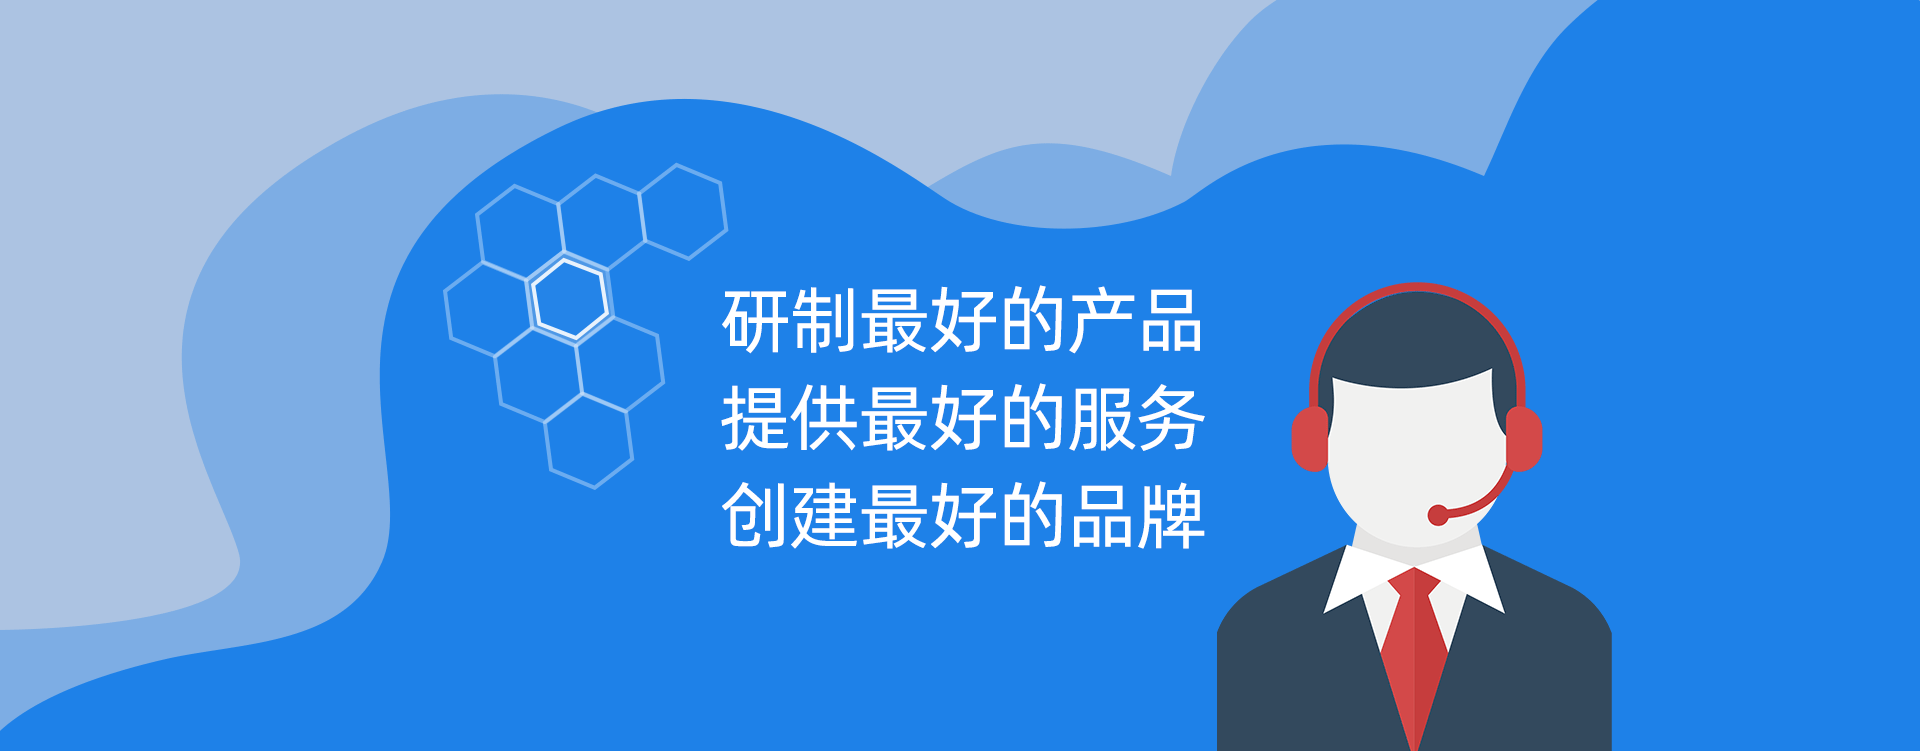 2-哈尔滨九游会官网入口纳米科技发展有限公司